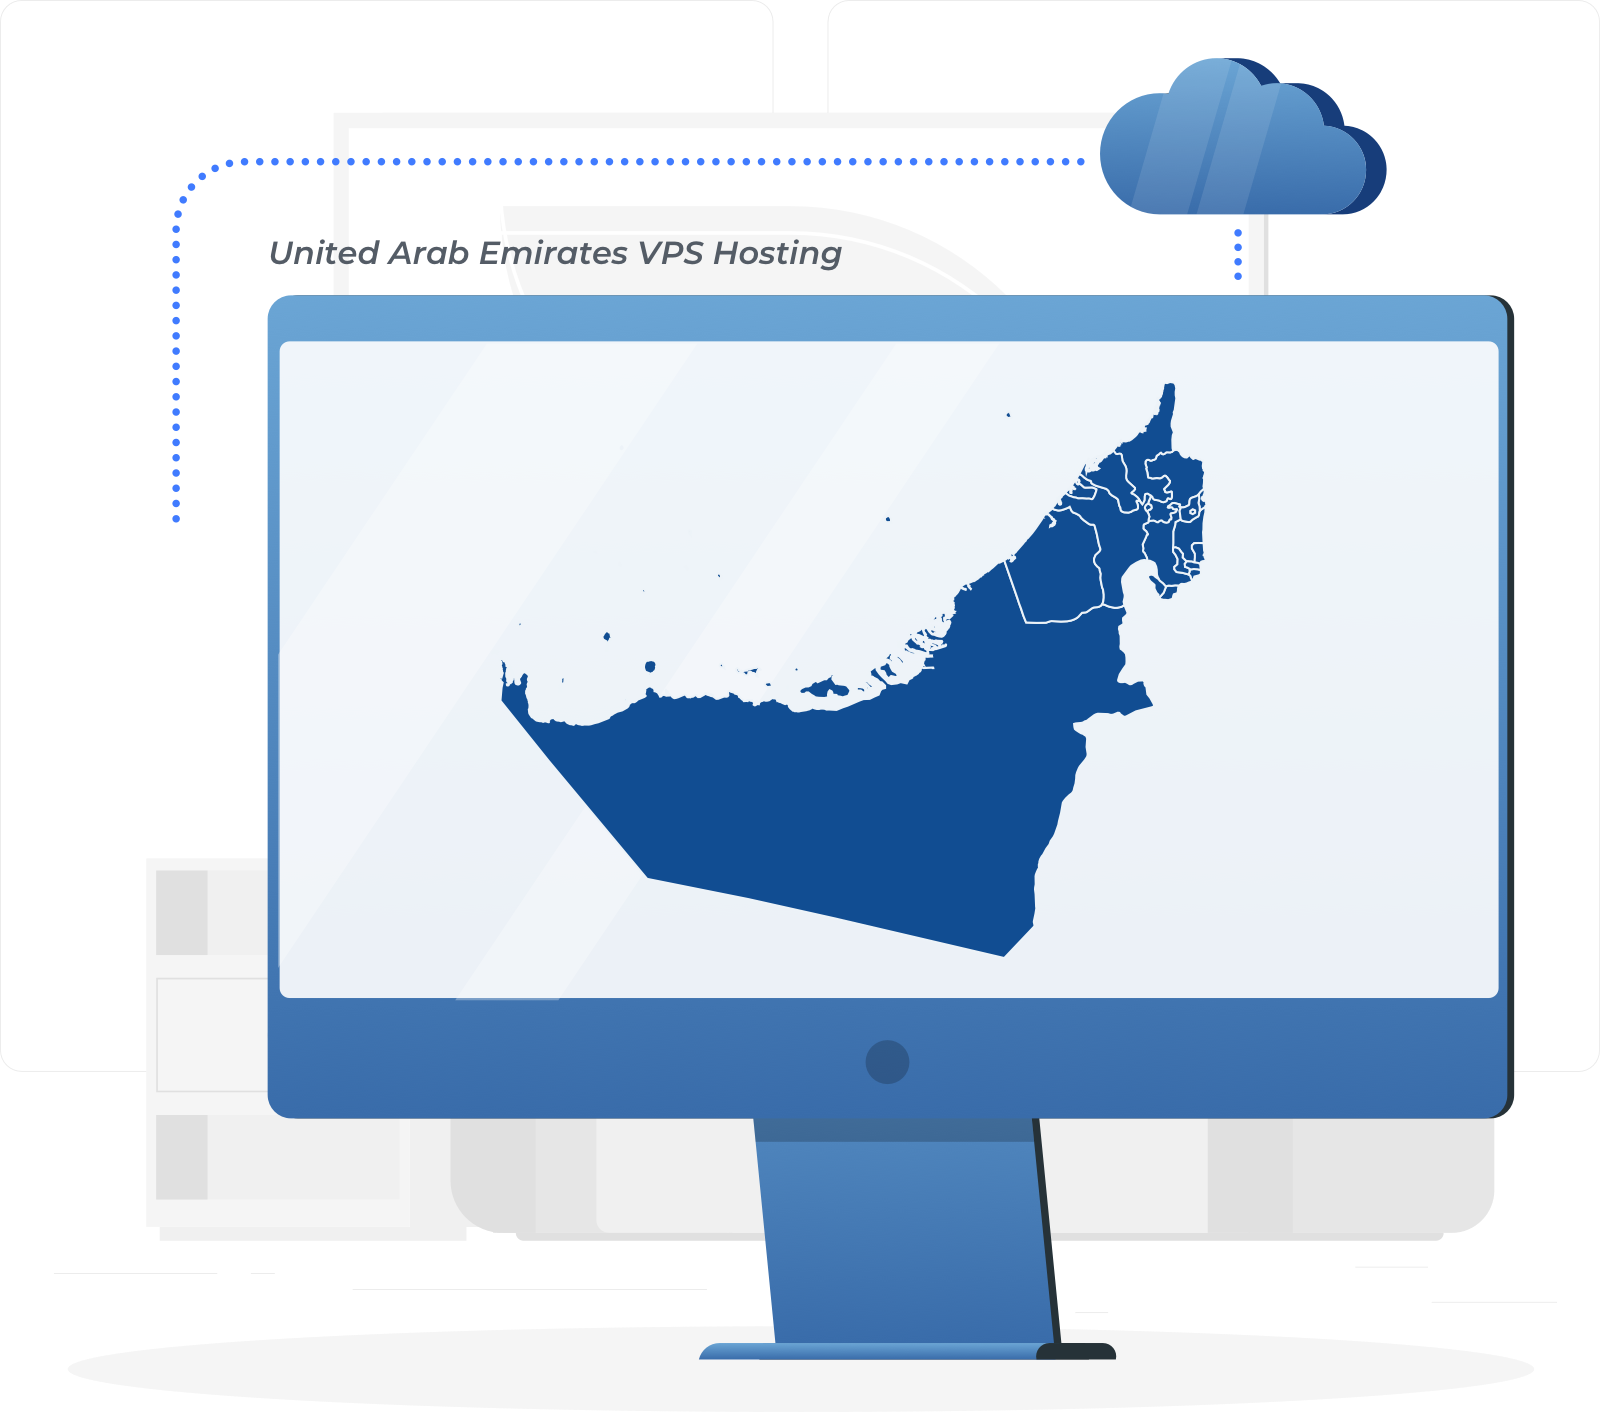 阿拉伯联合酋长国 VPS，和高利用率的云服务